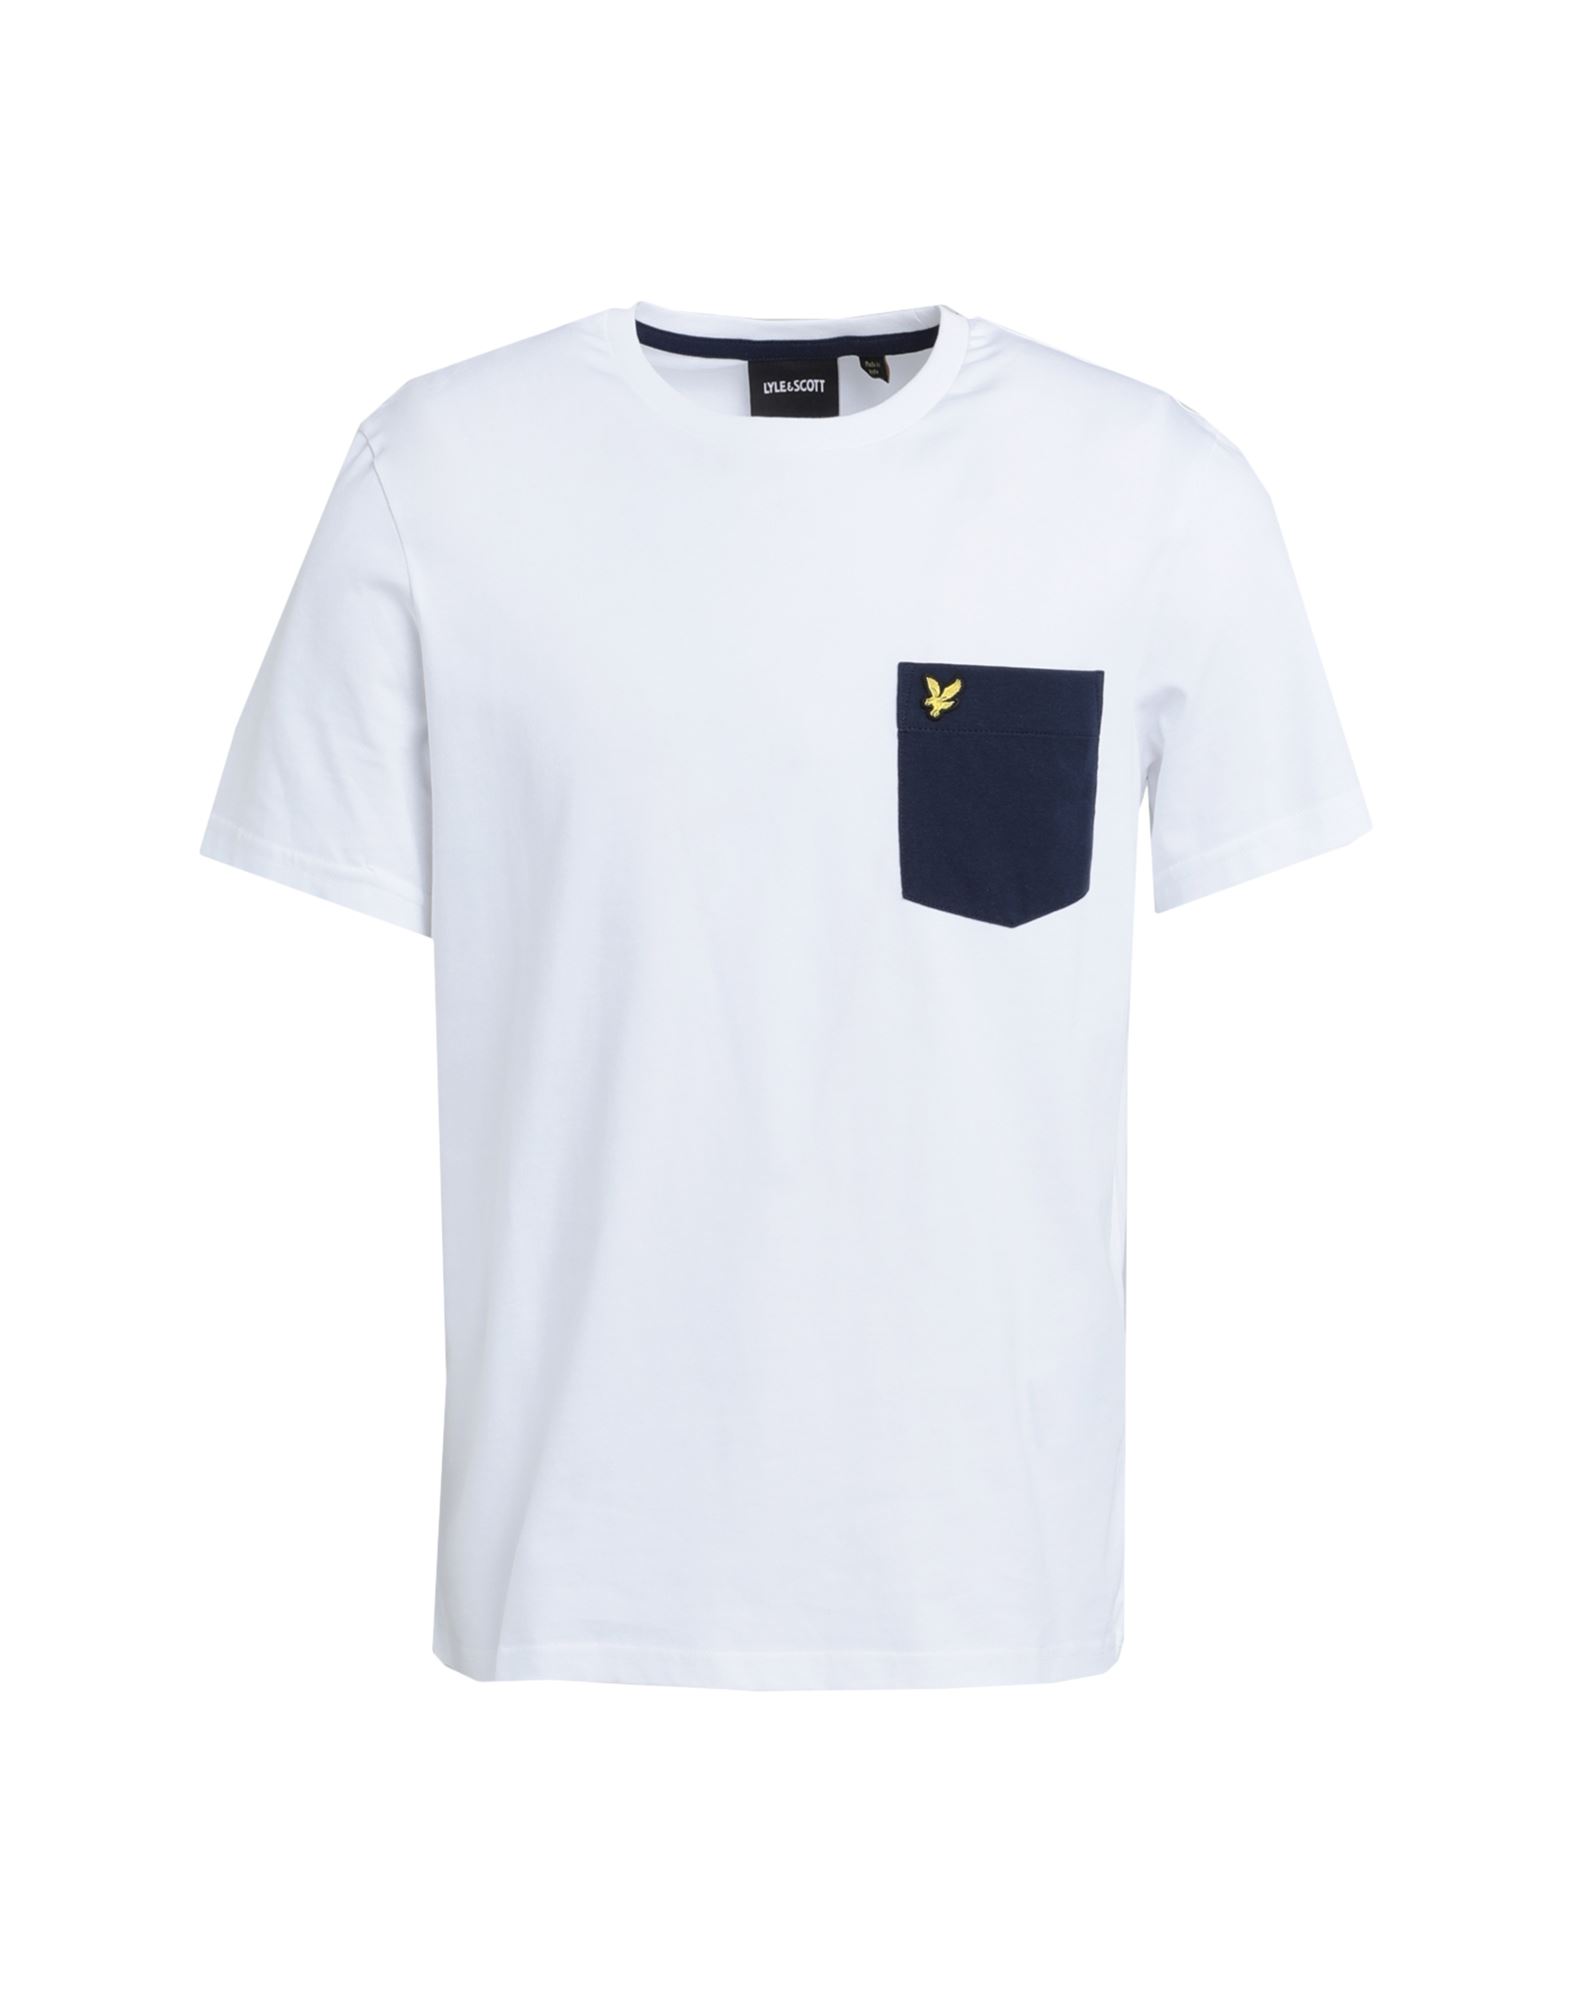 Lyle & Scott Man T-shirt White Size Xl Cotton